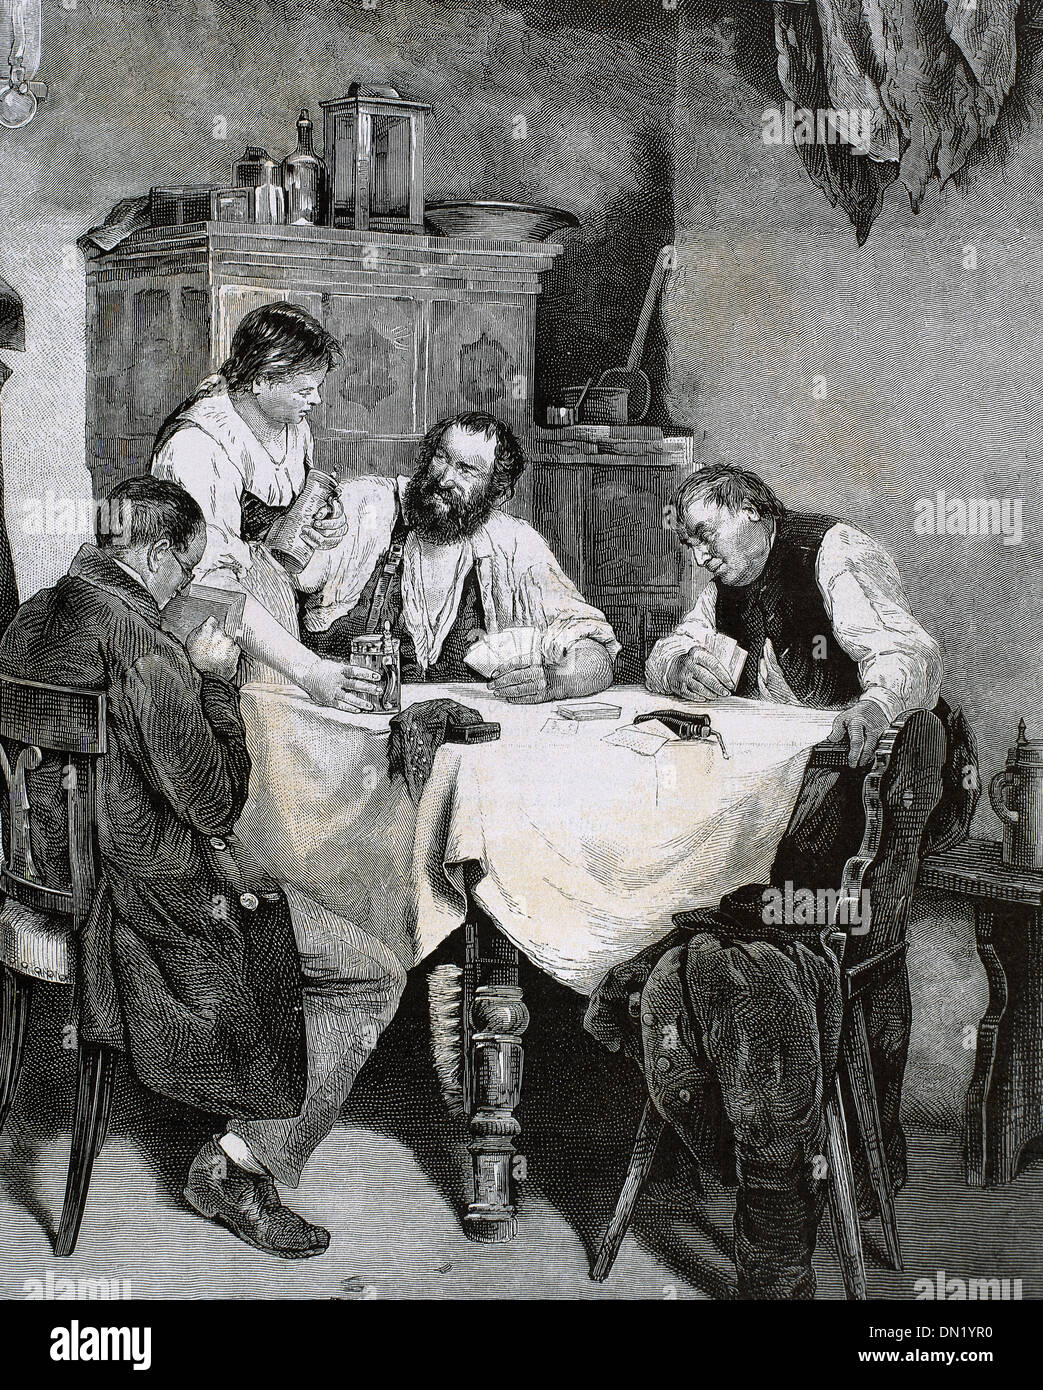 La société. Famille de cartes à jouer à la maison. Rulf gravure L., 1887 Banque D'Images